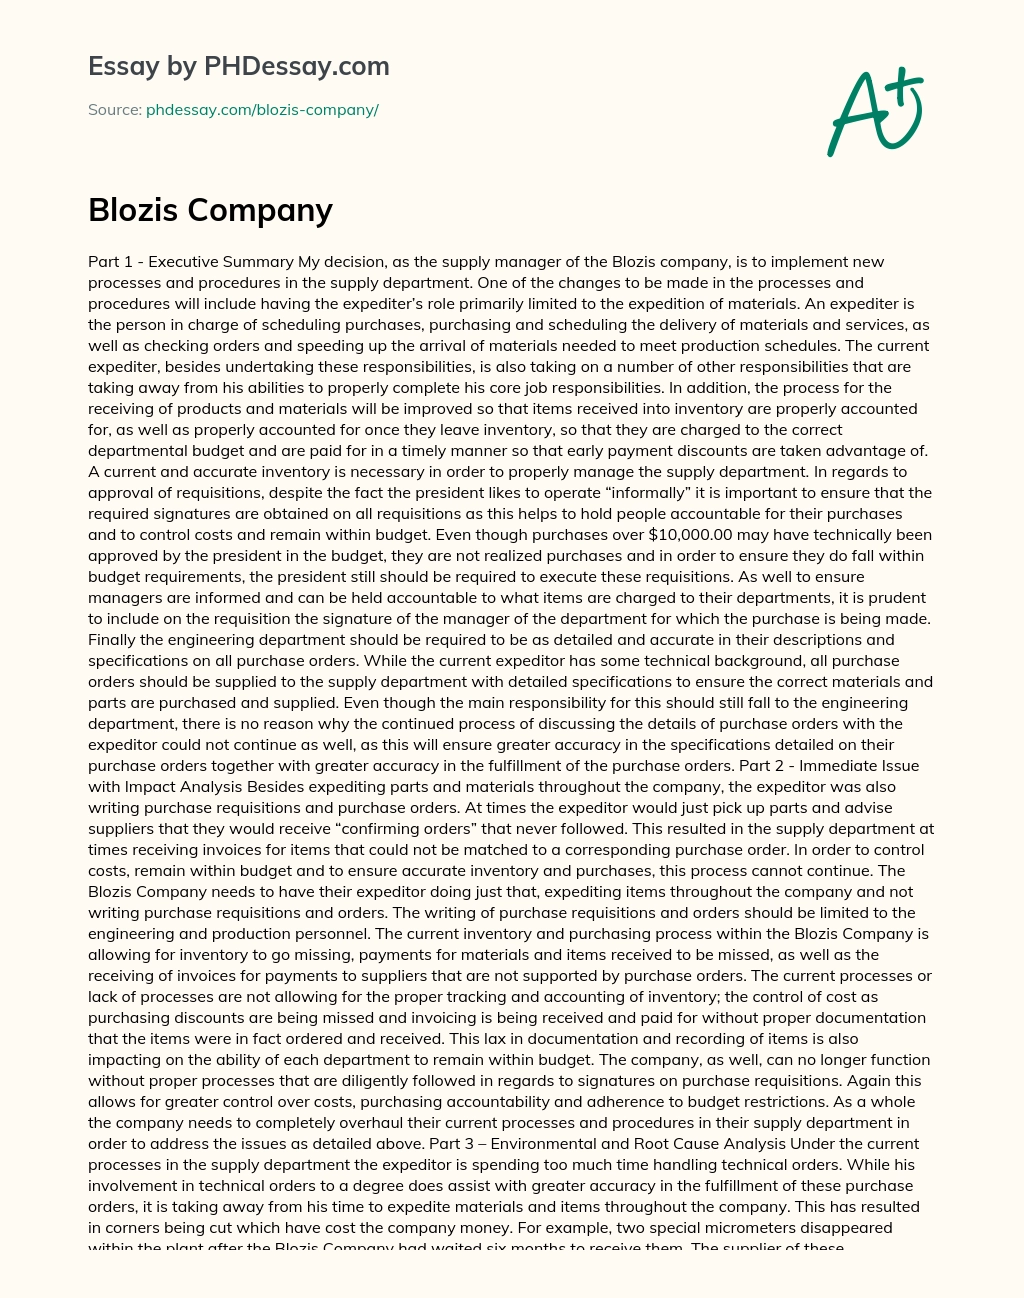 Blozis Company essay